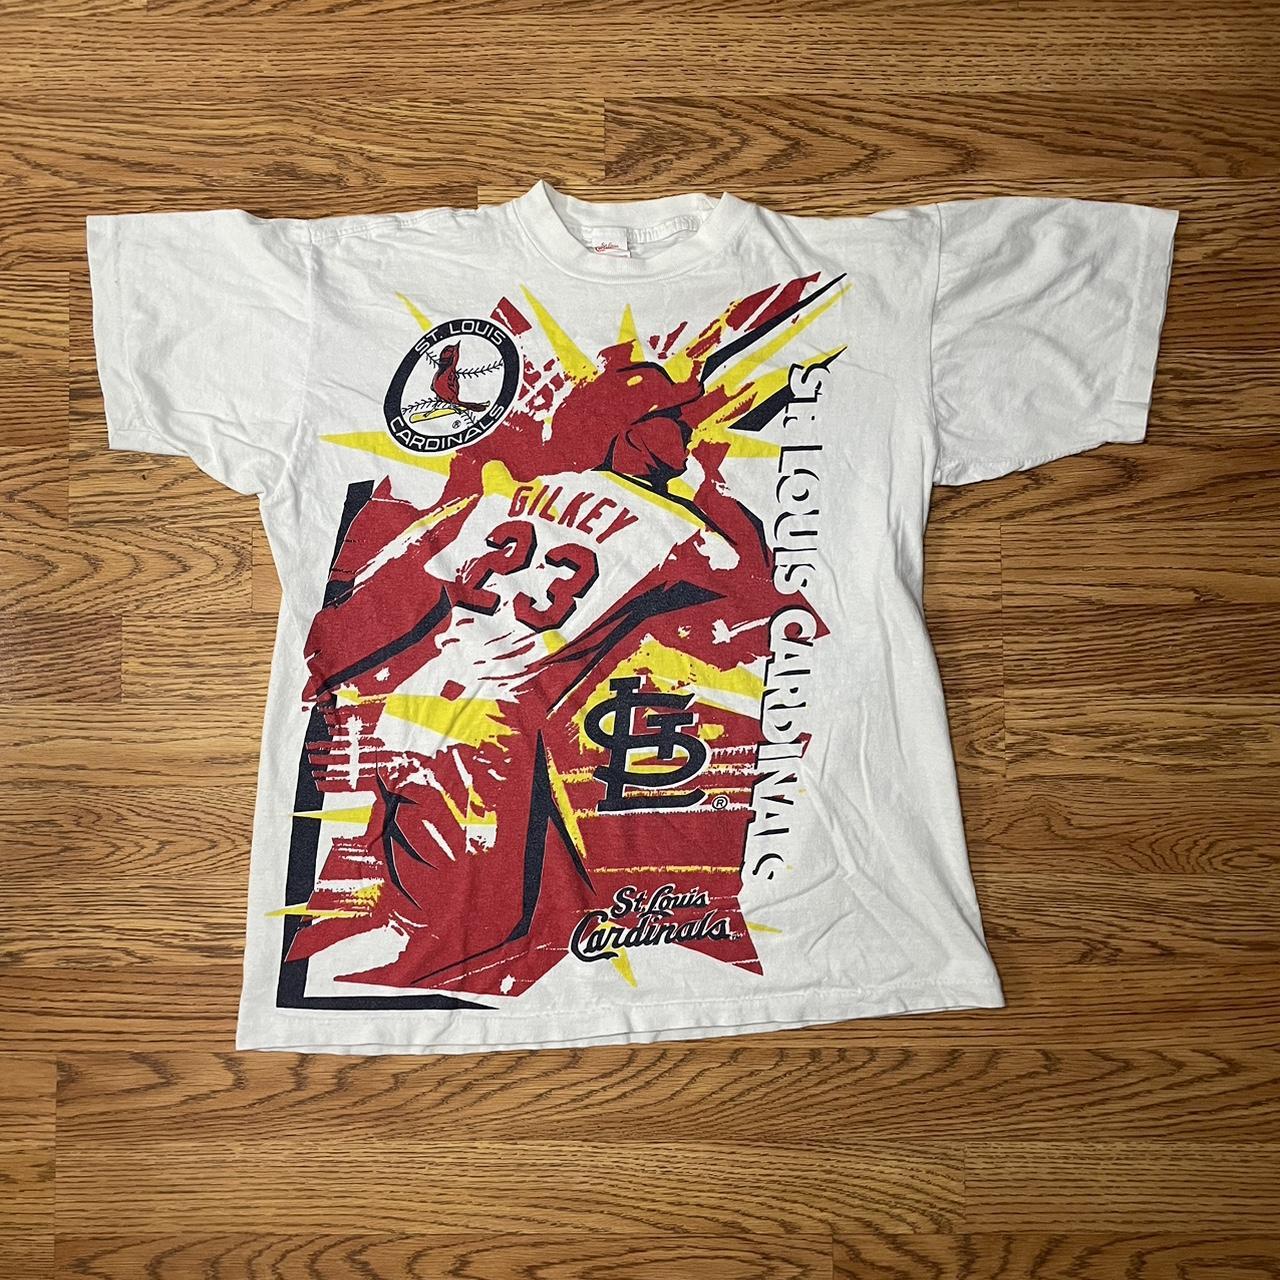 Vintage St. Louis cardinals graphic t shirt size xl - Depop